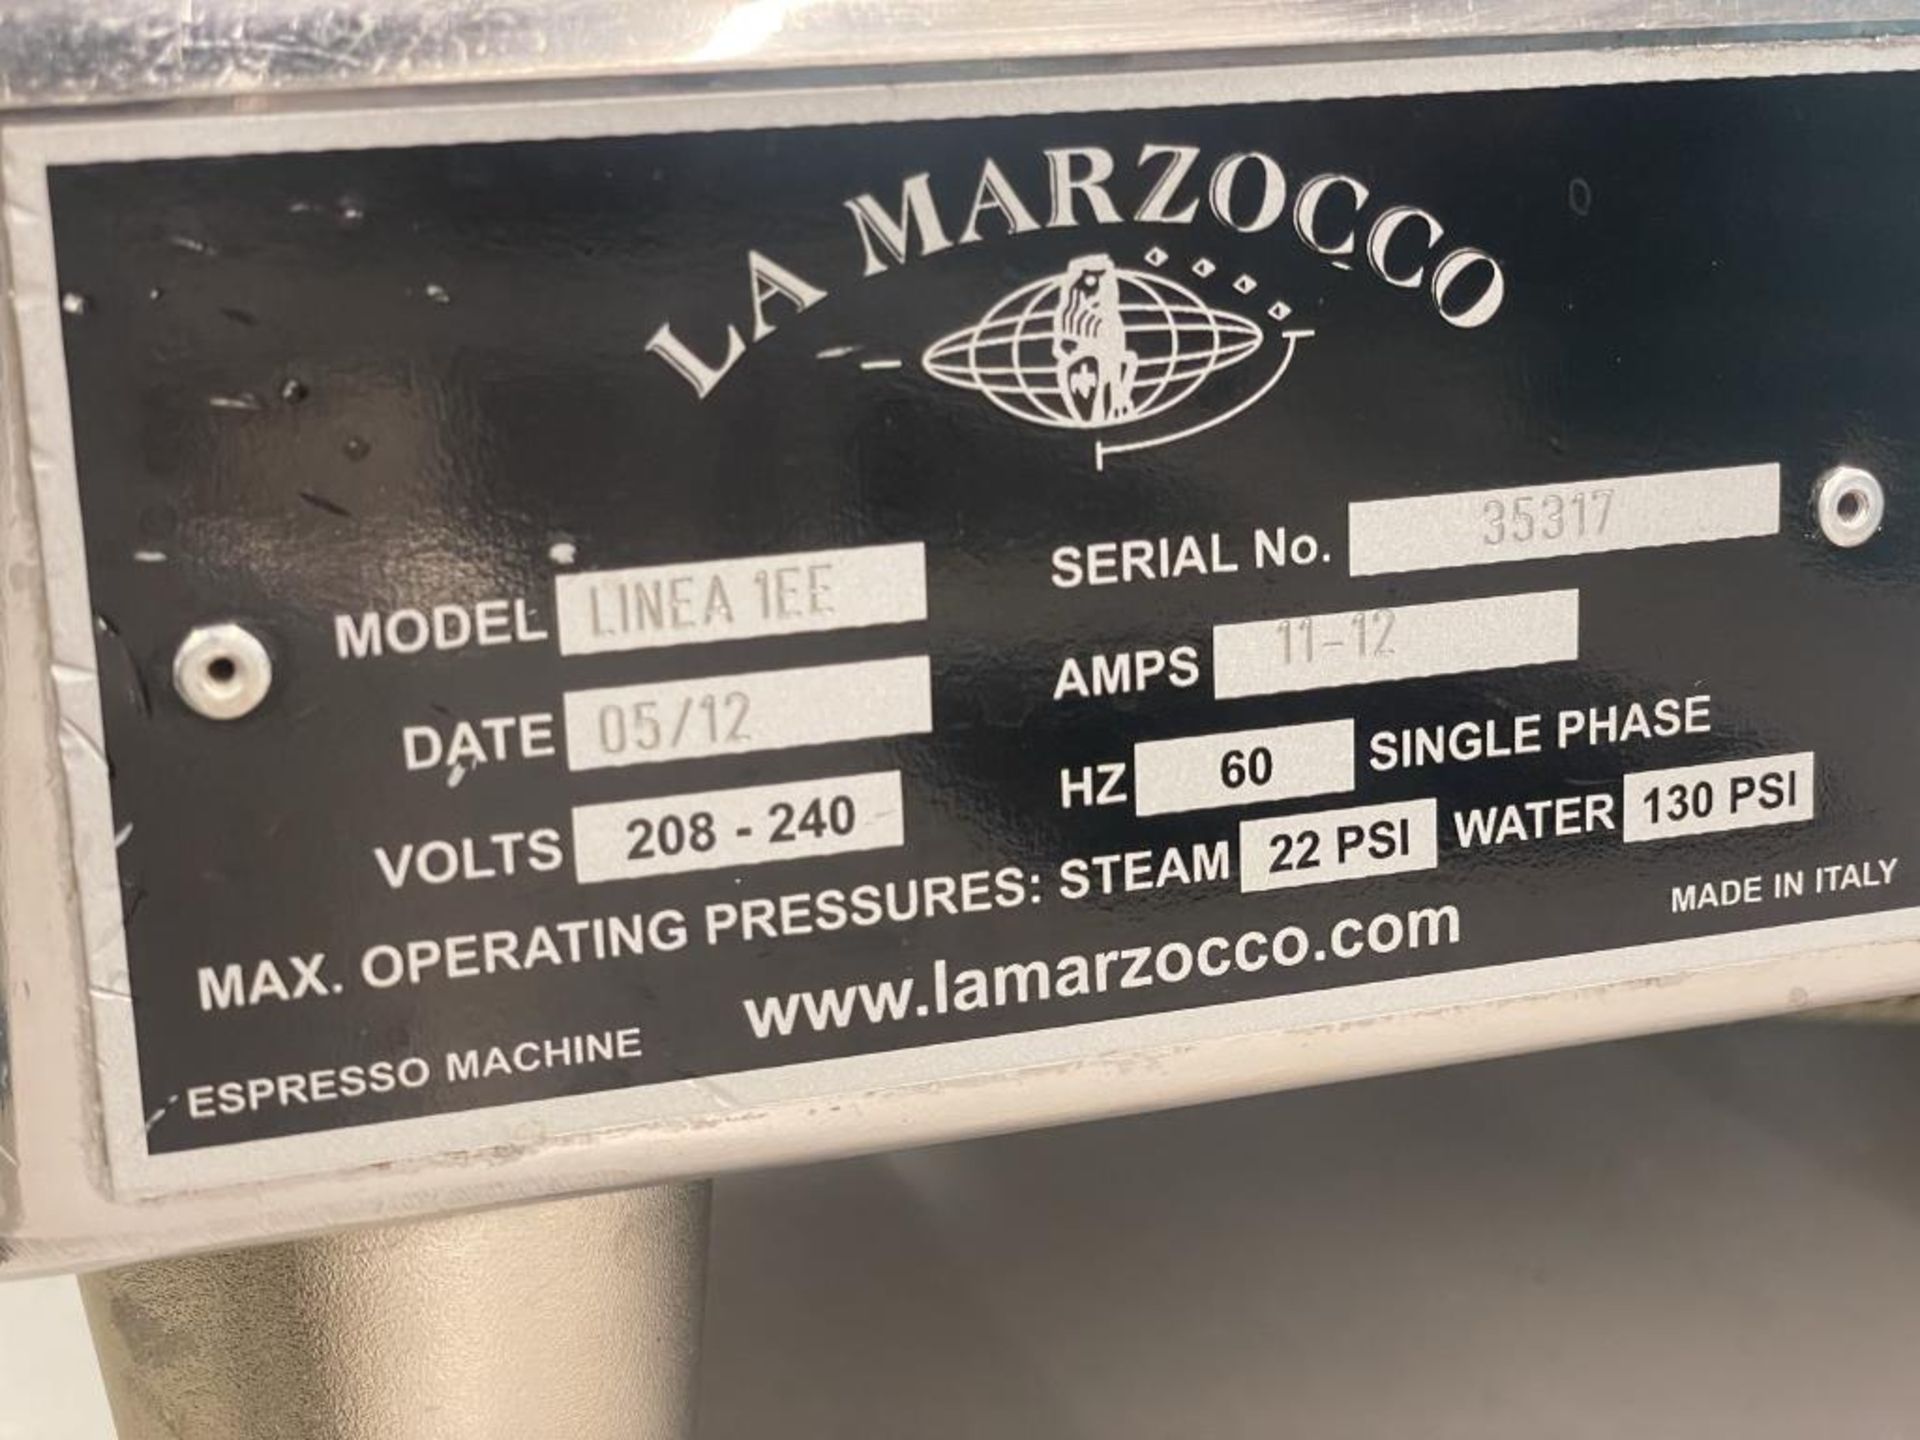 La Marzocco LINEA 1EE Semi-Auto Espresso Machine - Image 3 of 5